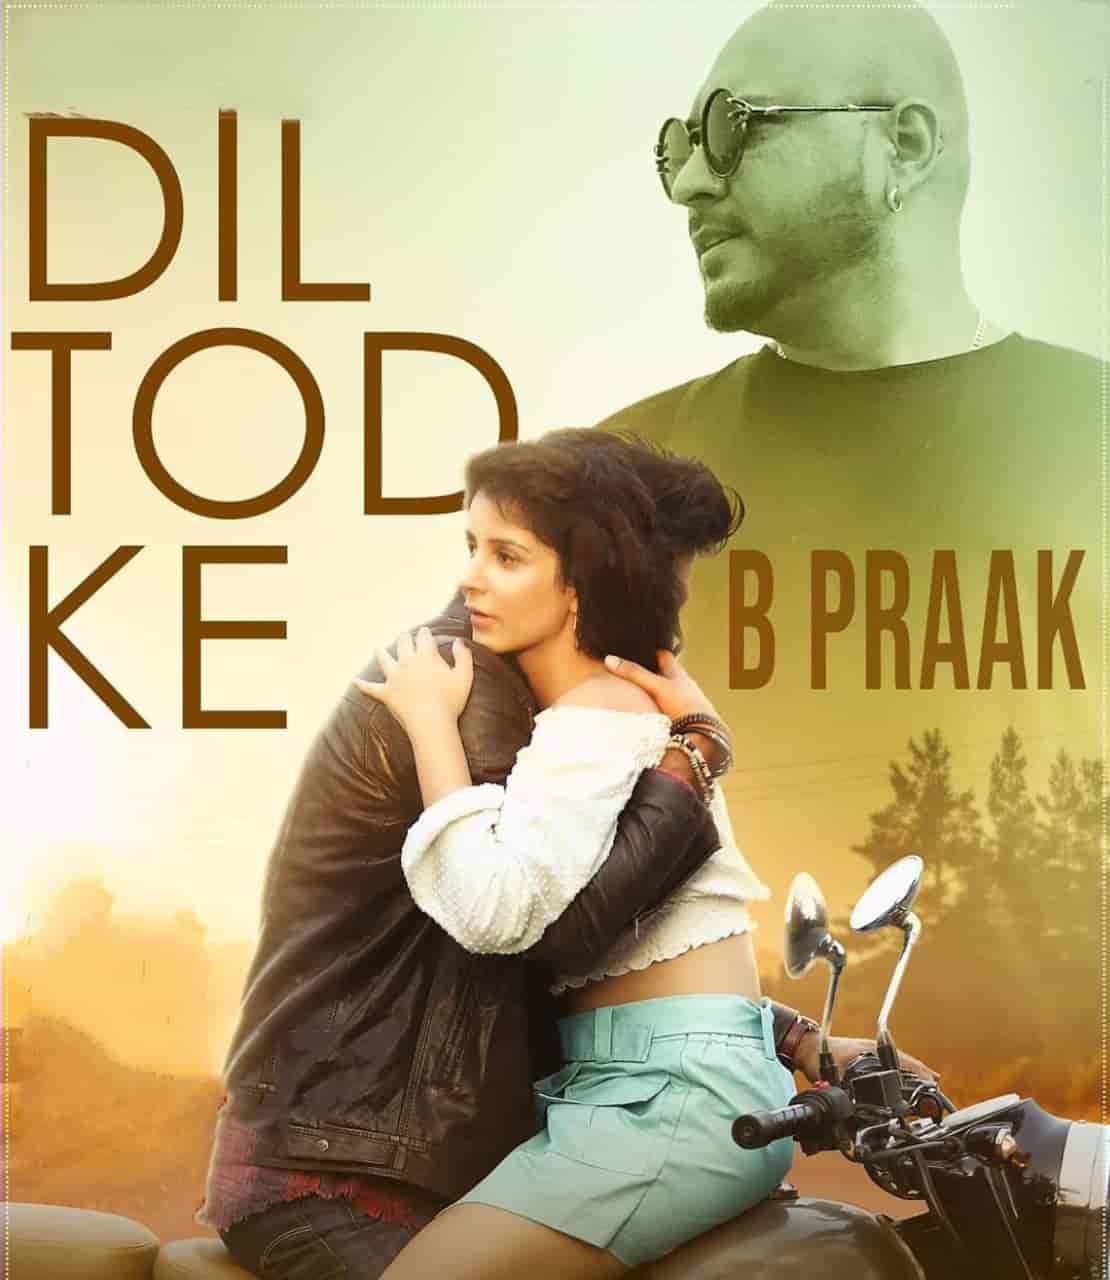 Dil Tod Ke Hindi Song Image By B Praak